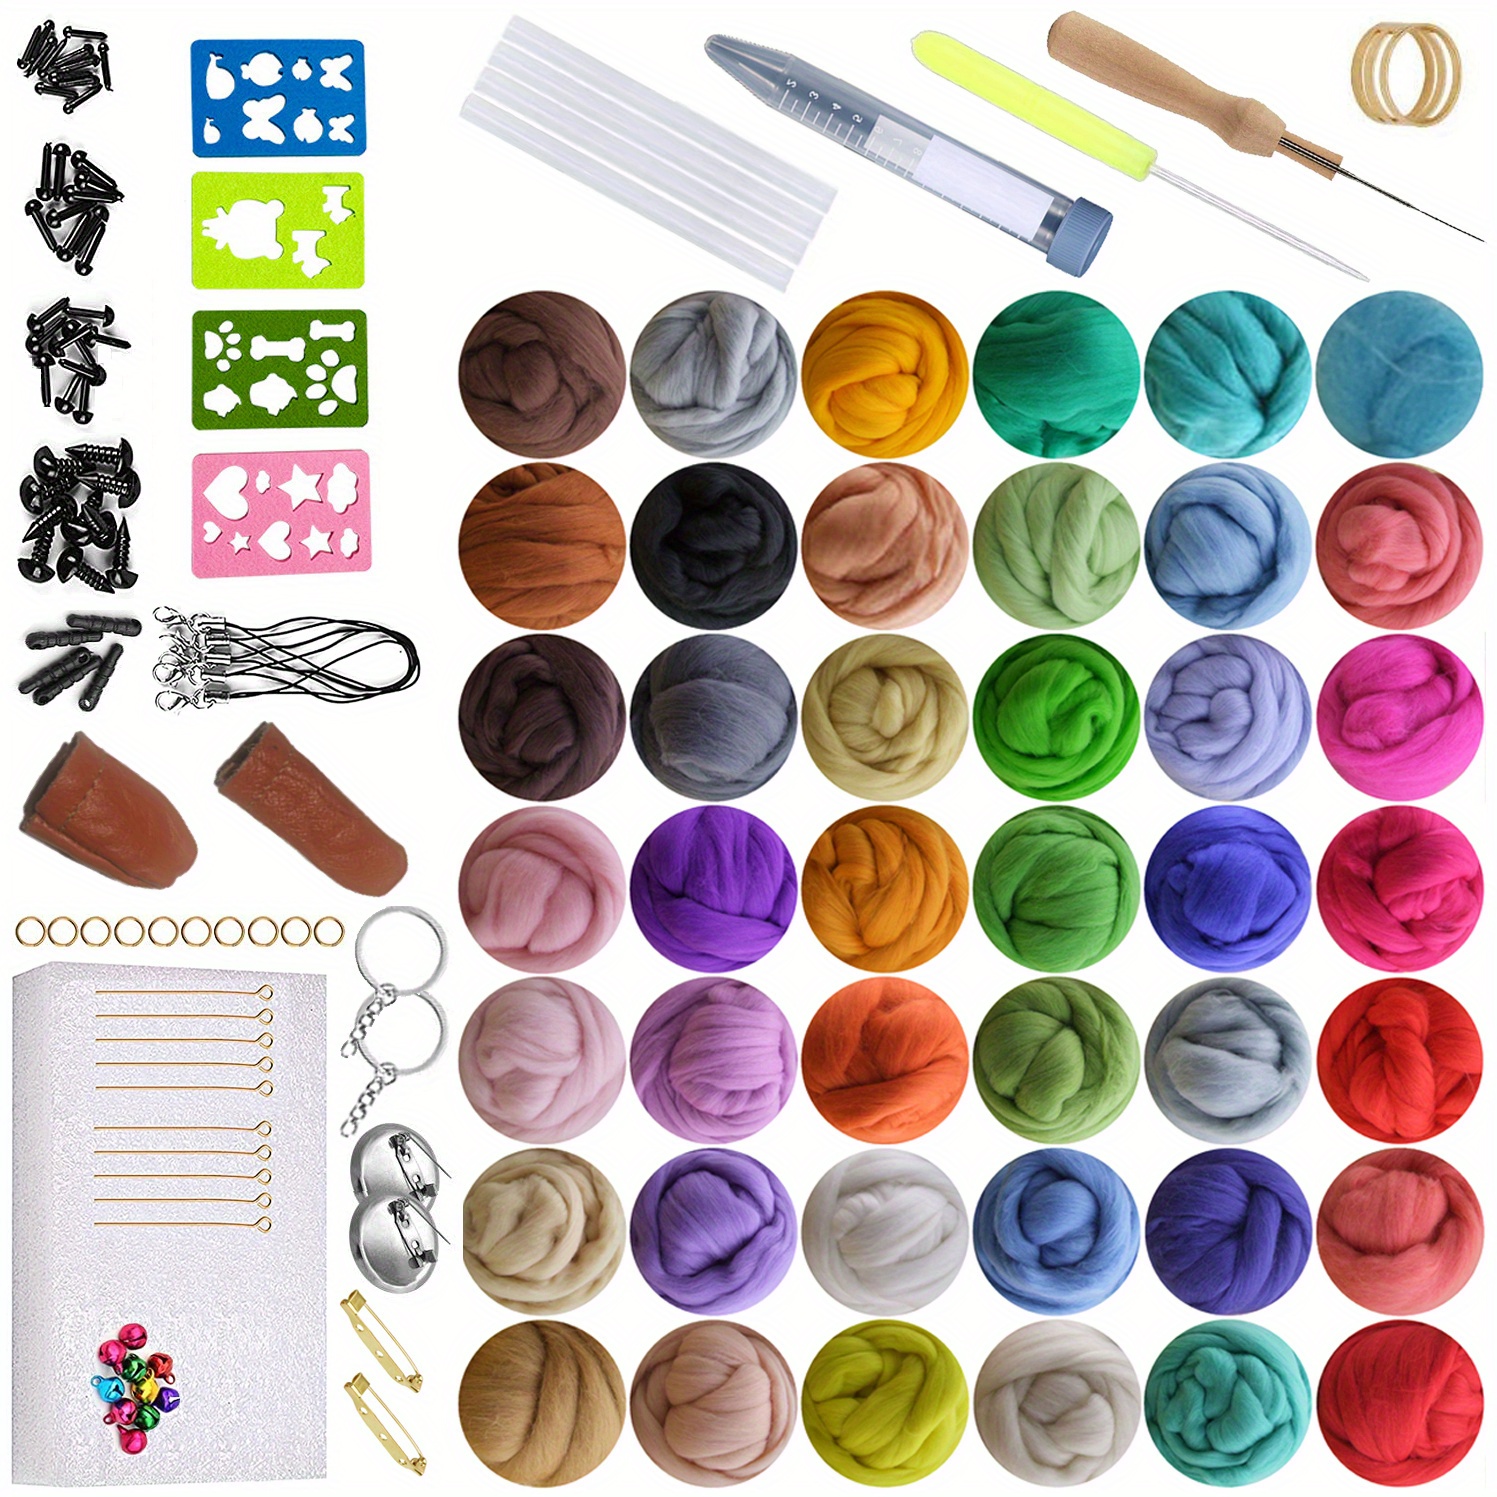 Needle Felting Kit,Needle Felting Kit for Beginners,Wool Needle Felting  Beginner Kits with Colorful Wool,Felting Needles,Instructions,for Adults